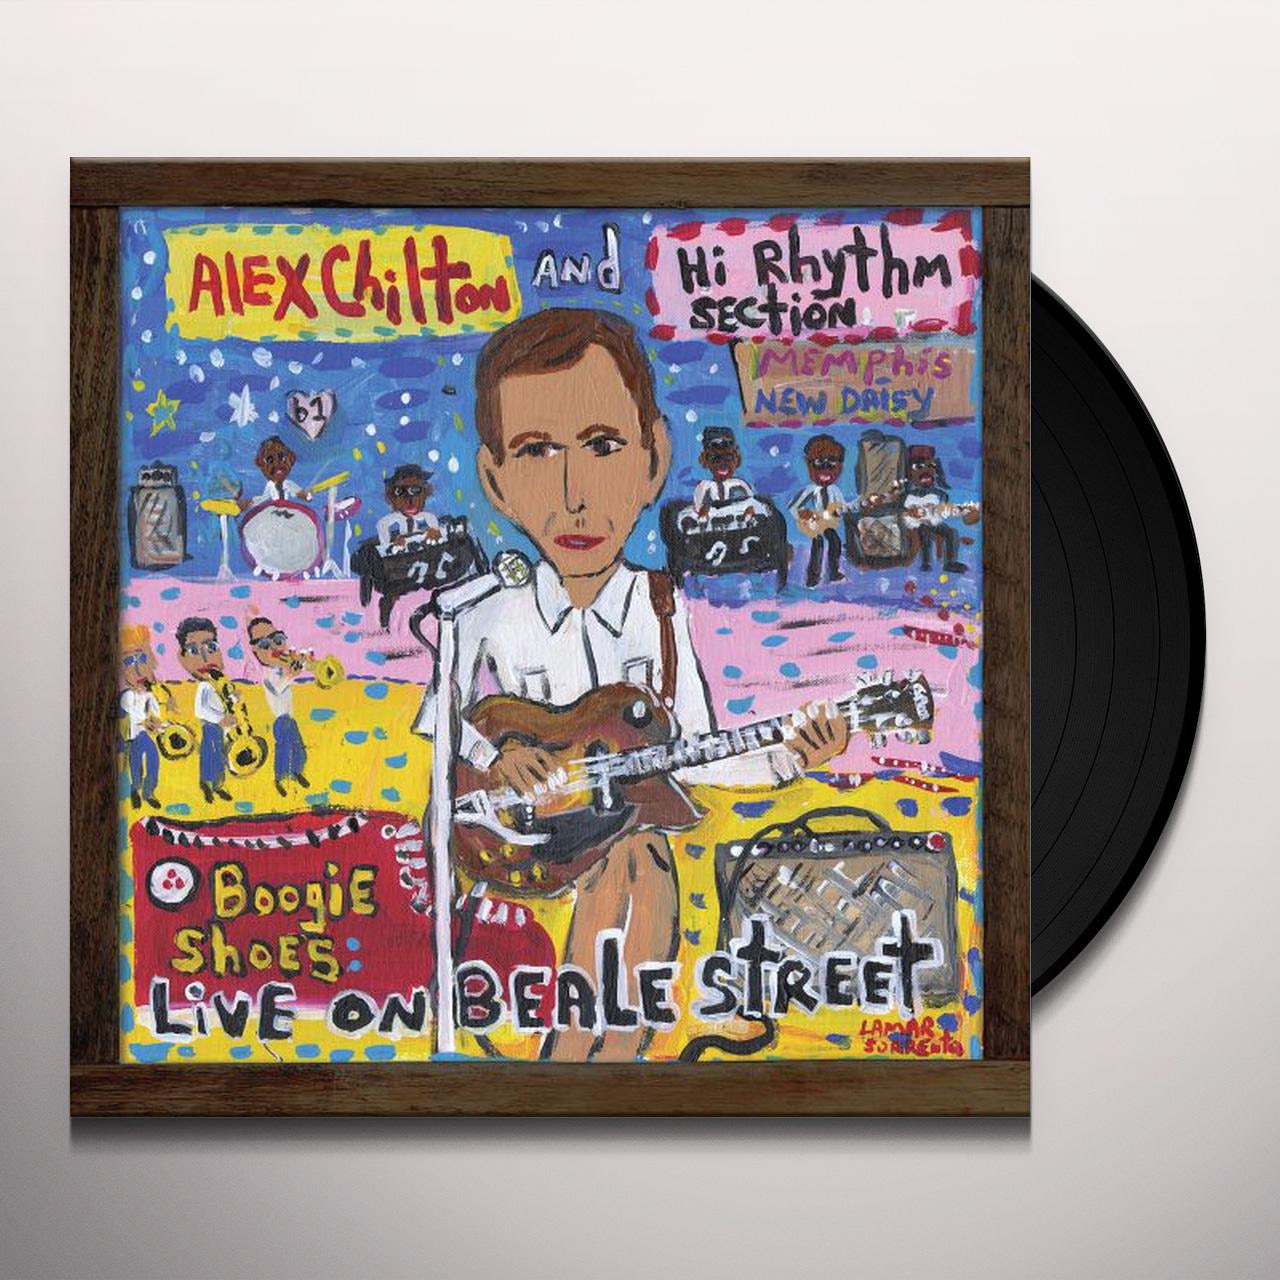 Alex Chilton ‎– Boogie Shoes: Live on Beale Street LP